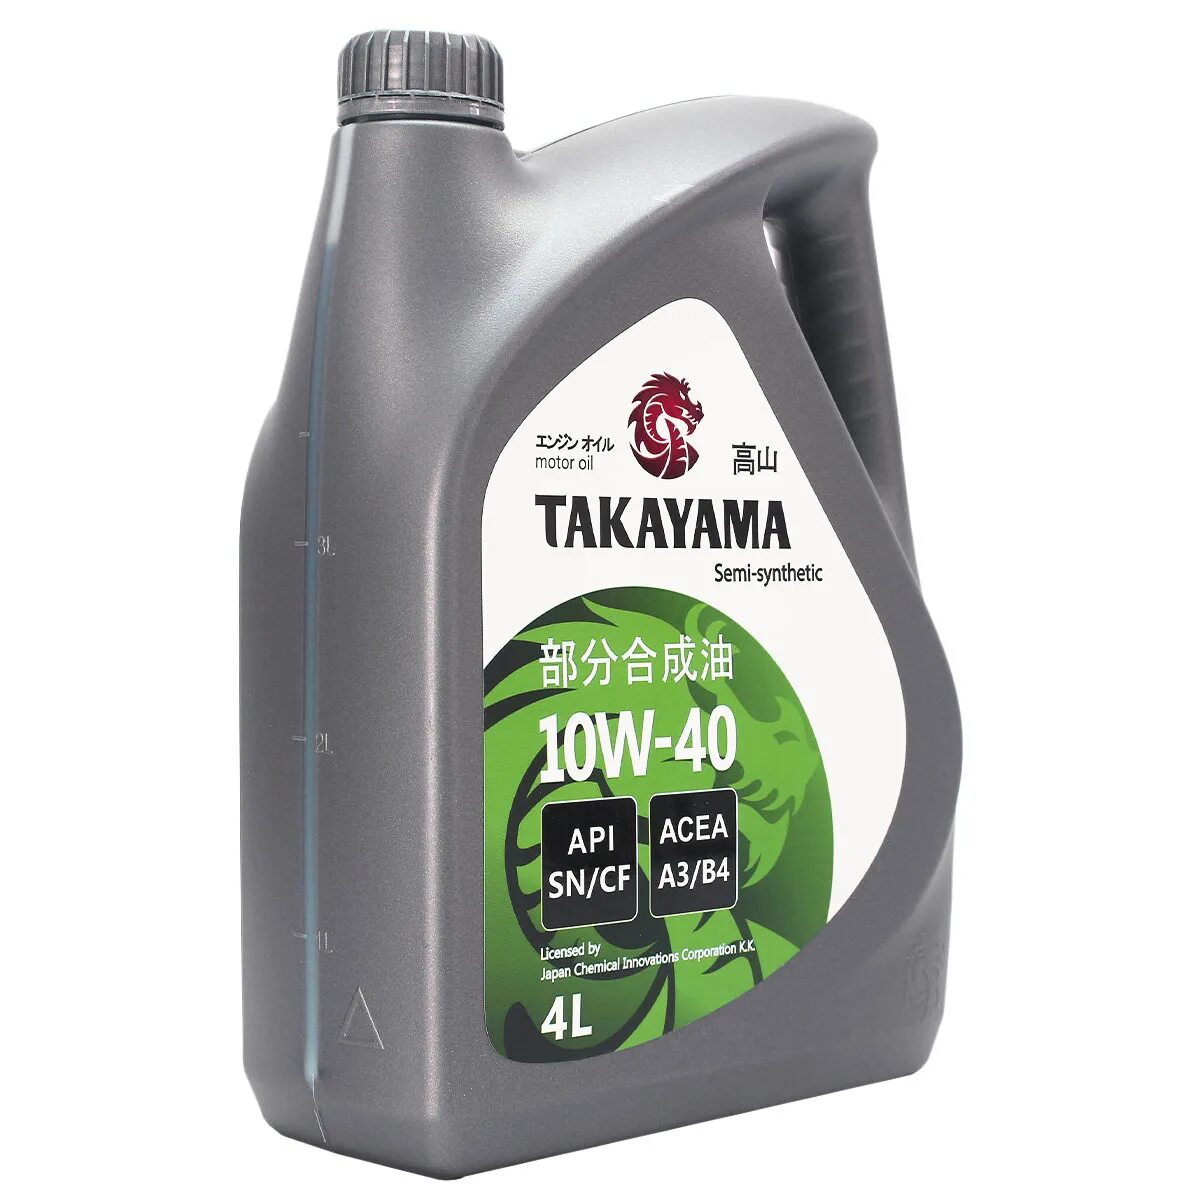 Масло моторное Takayama 10w-40 API SN/CF 4л (пластик). Масло Такаяма 10w 40. Масло Такаяма 10w 40 отзывы. Takayama 10w 40 полусинтетика отзывы. Куплю масло моторное такаяма